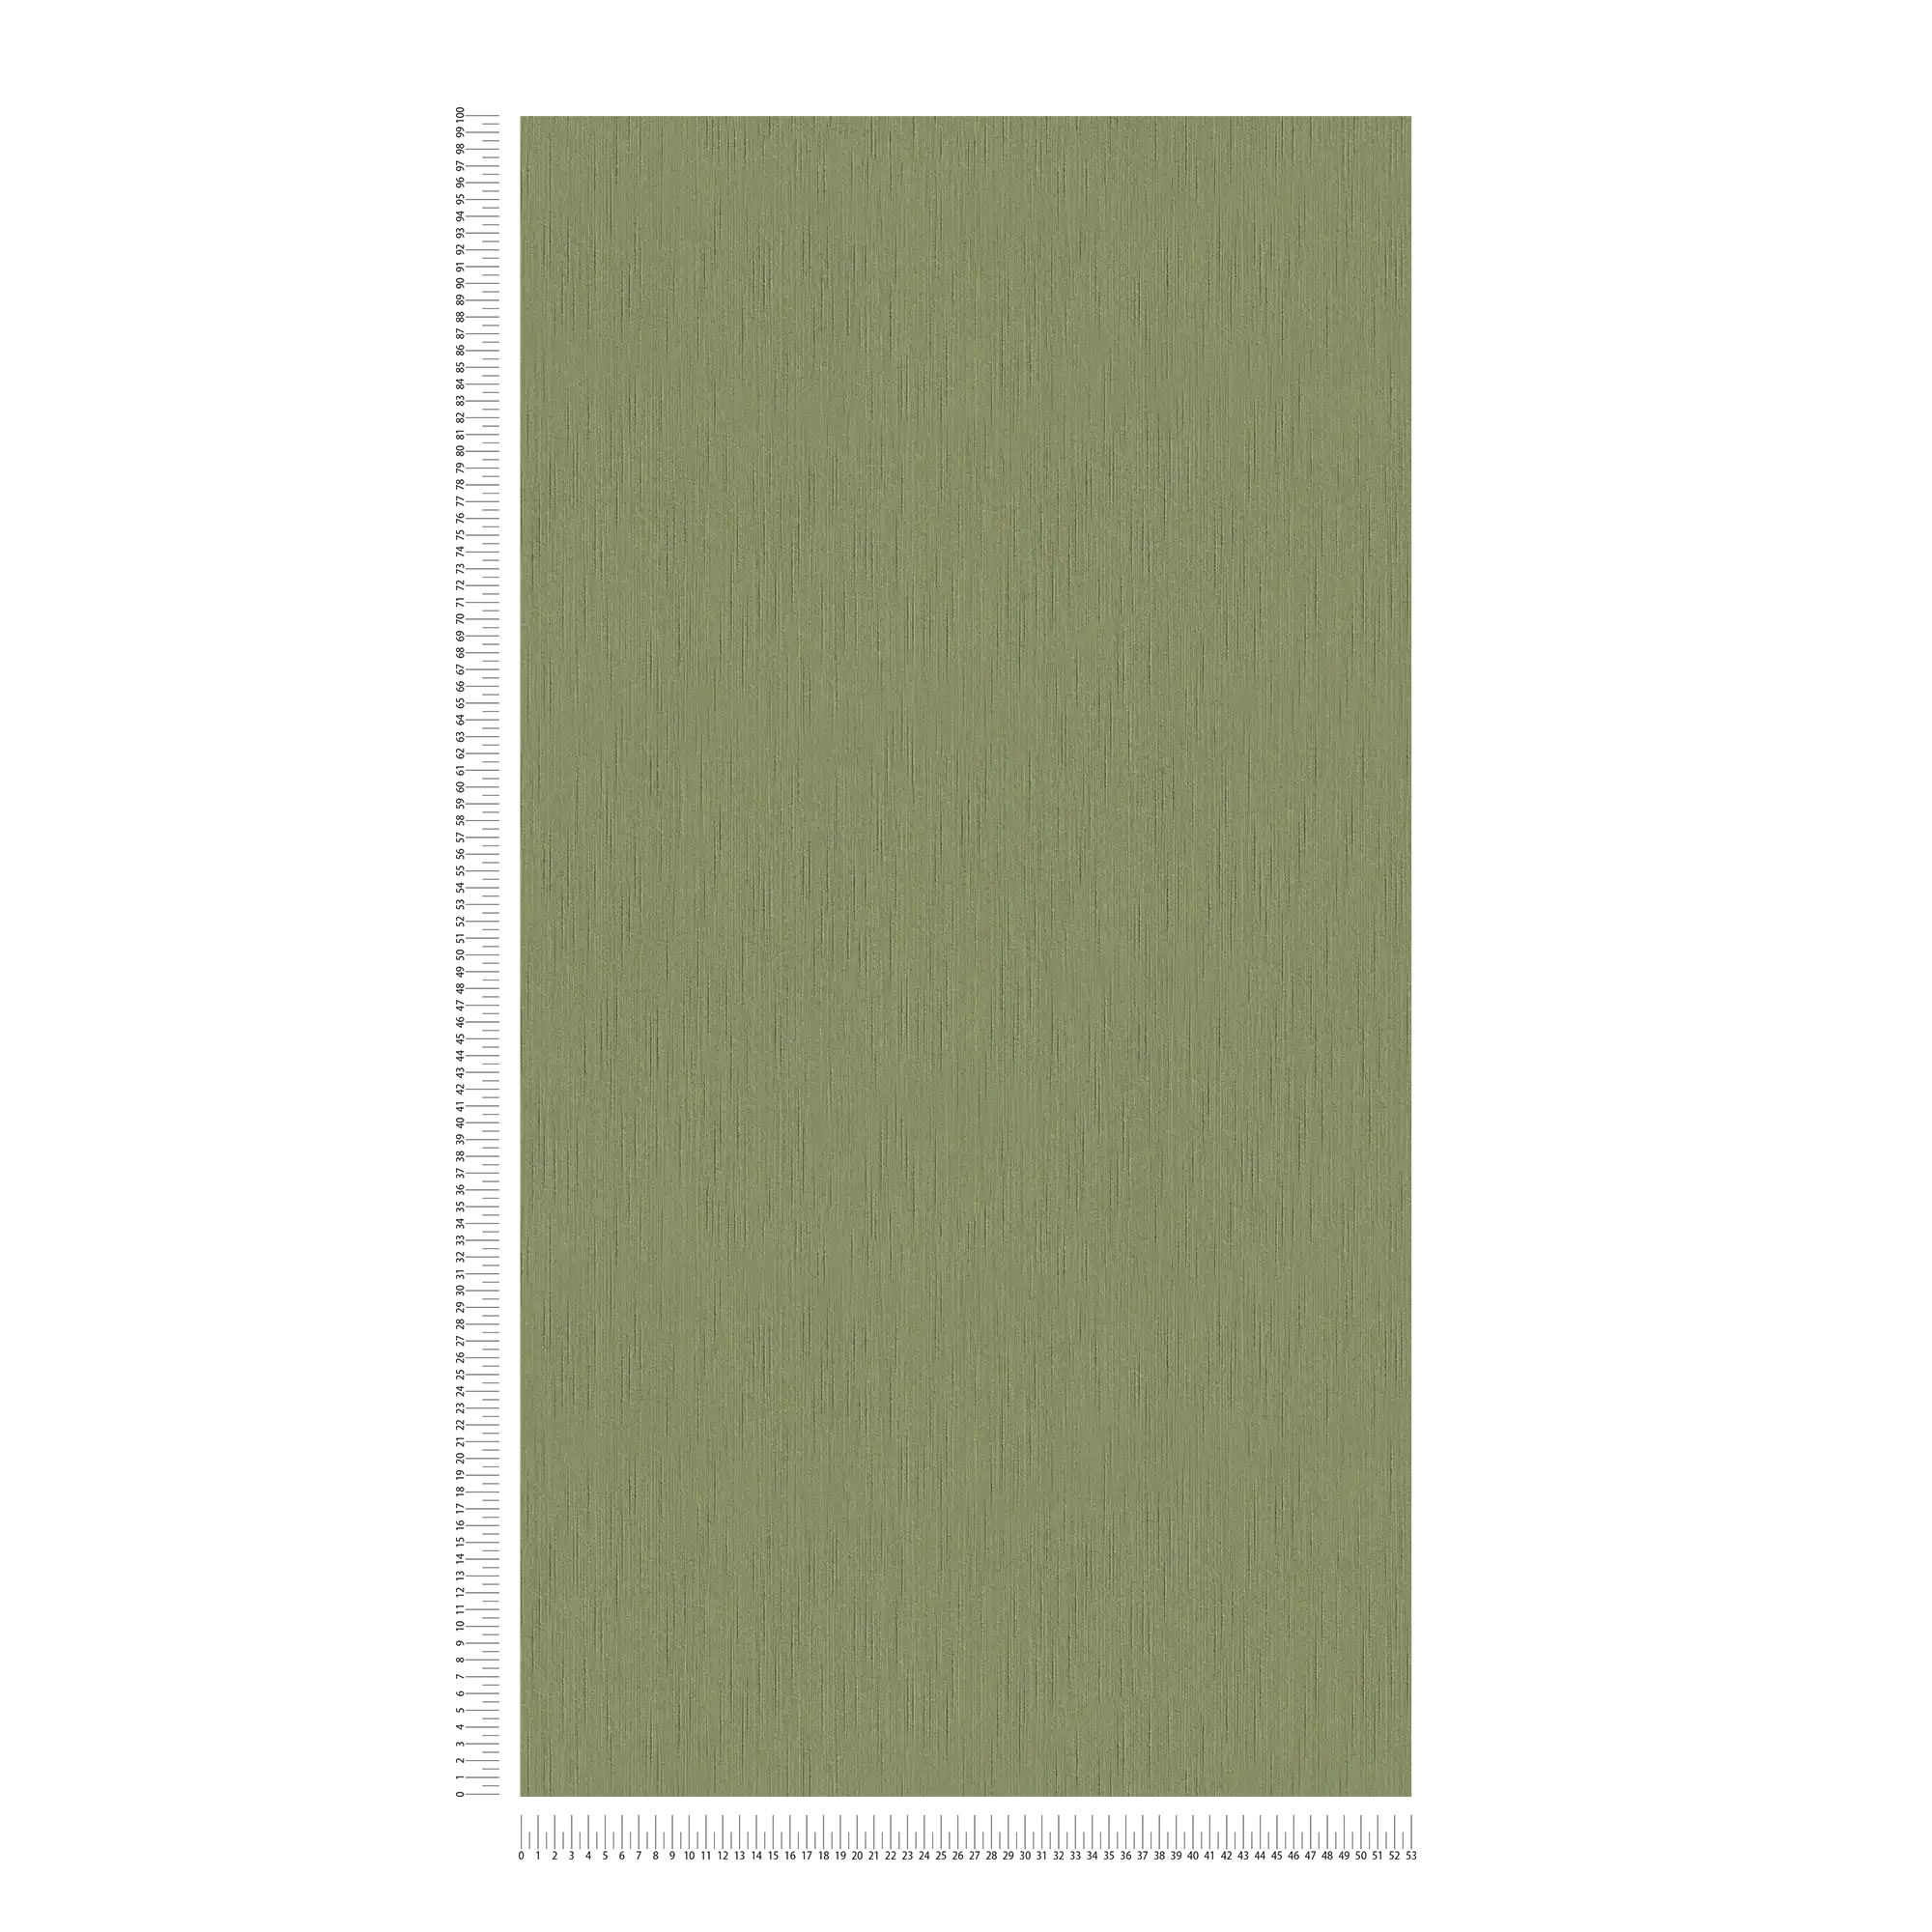             Carta da parati in tessuto non tessuto verde scuro con struttura a chiazze - verde
        